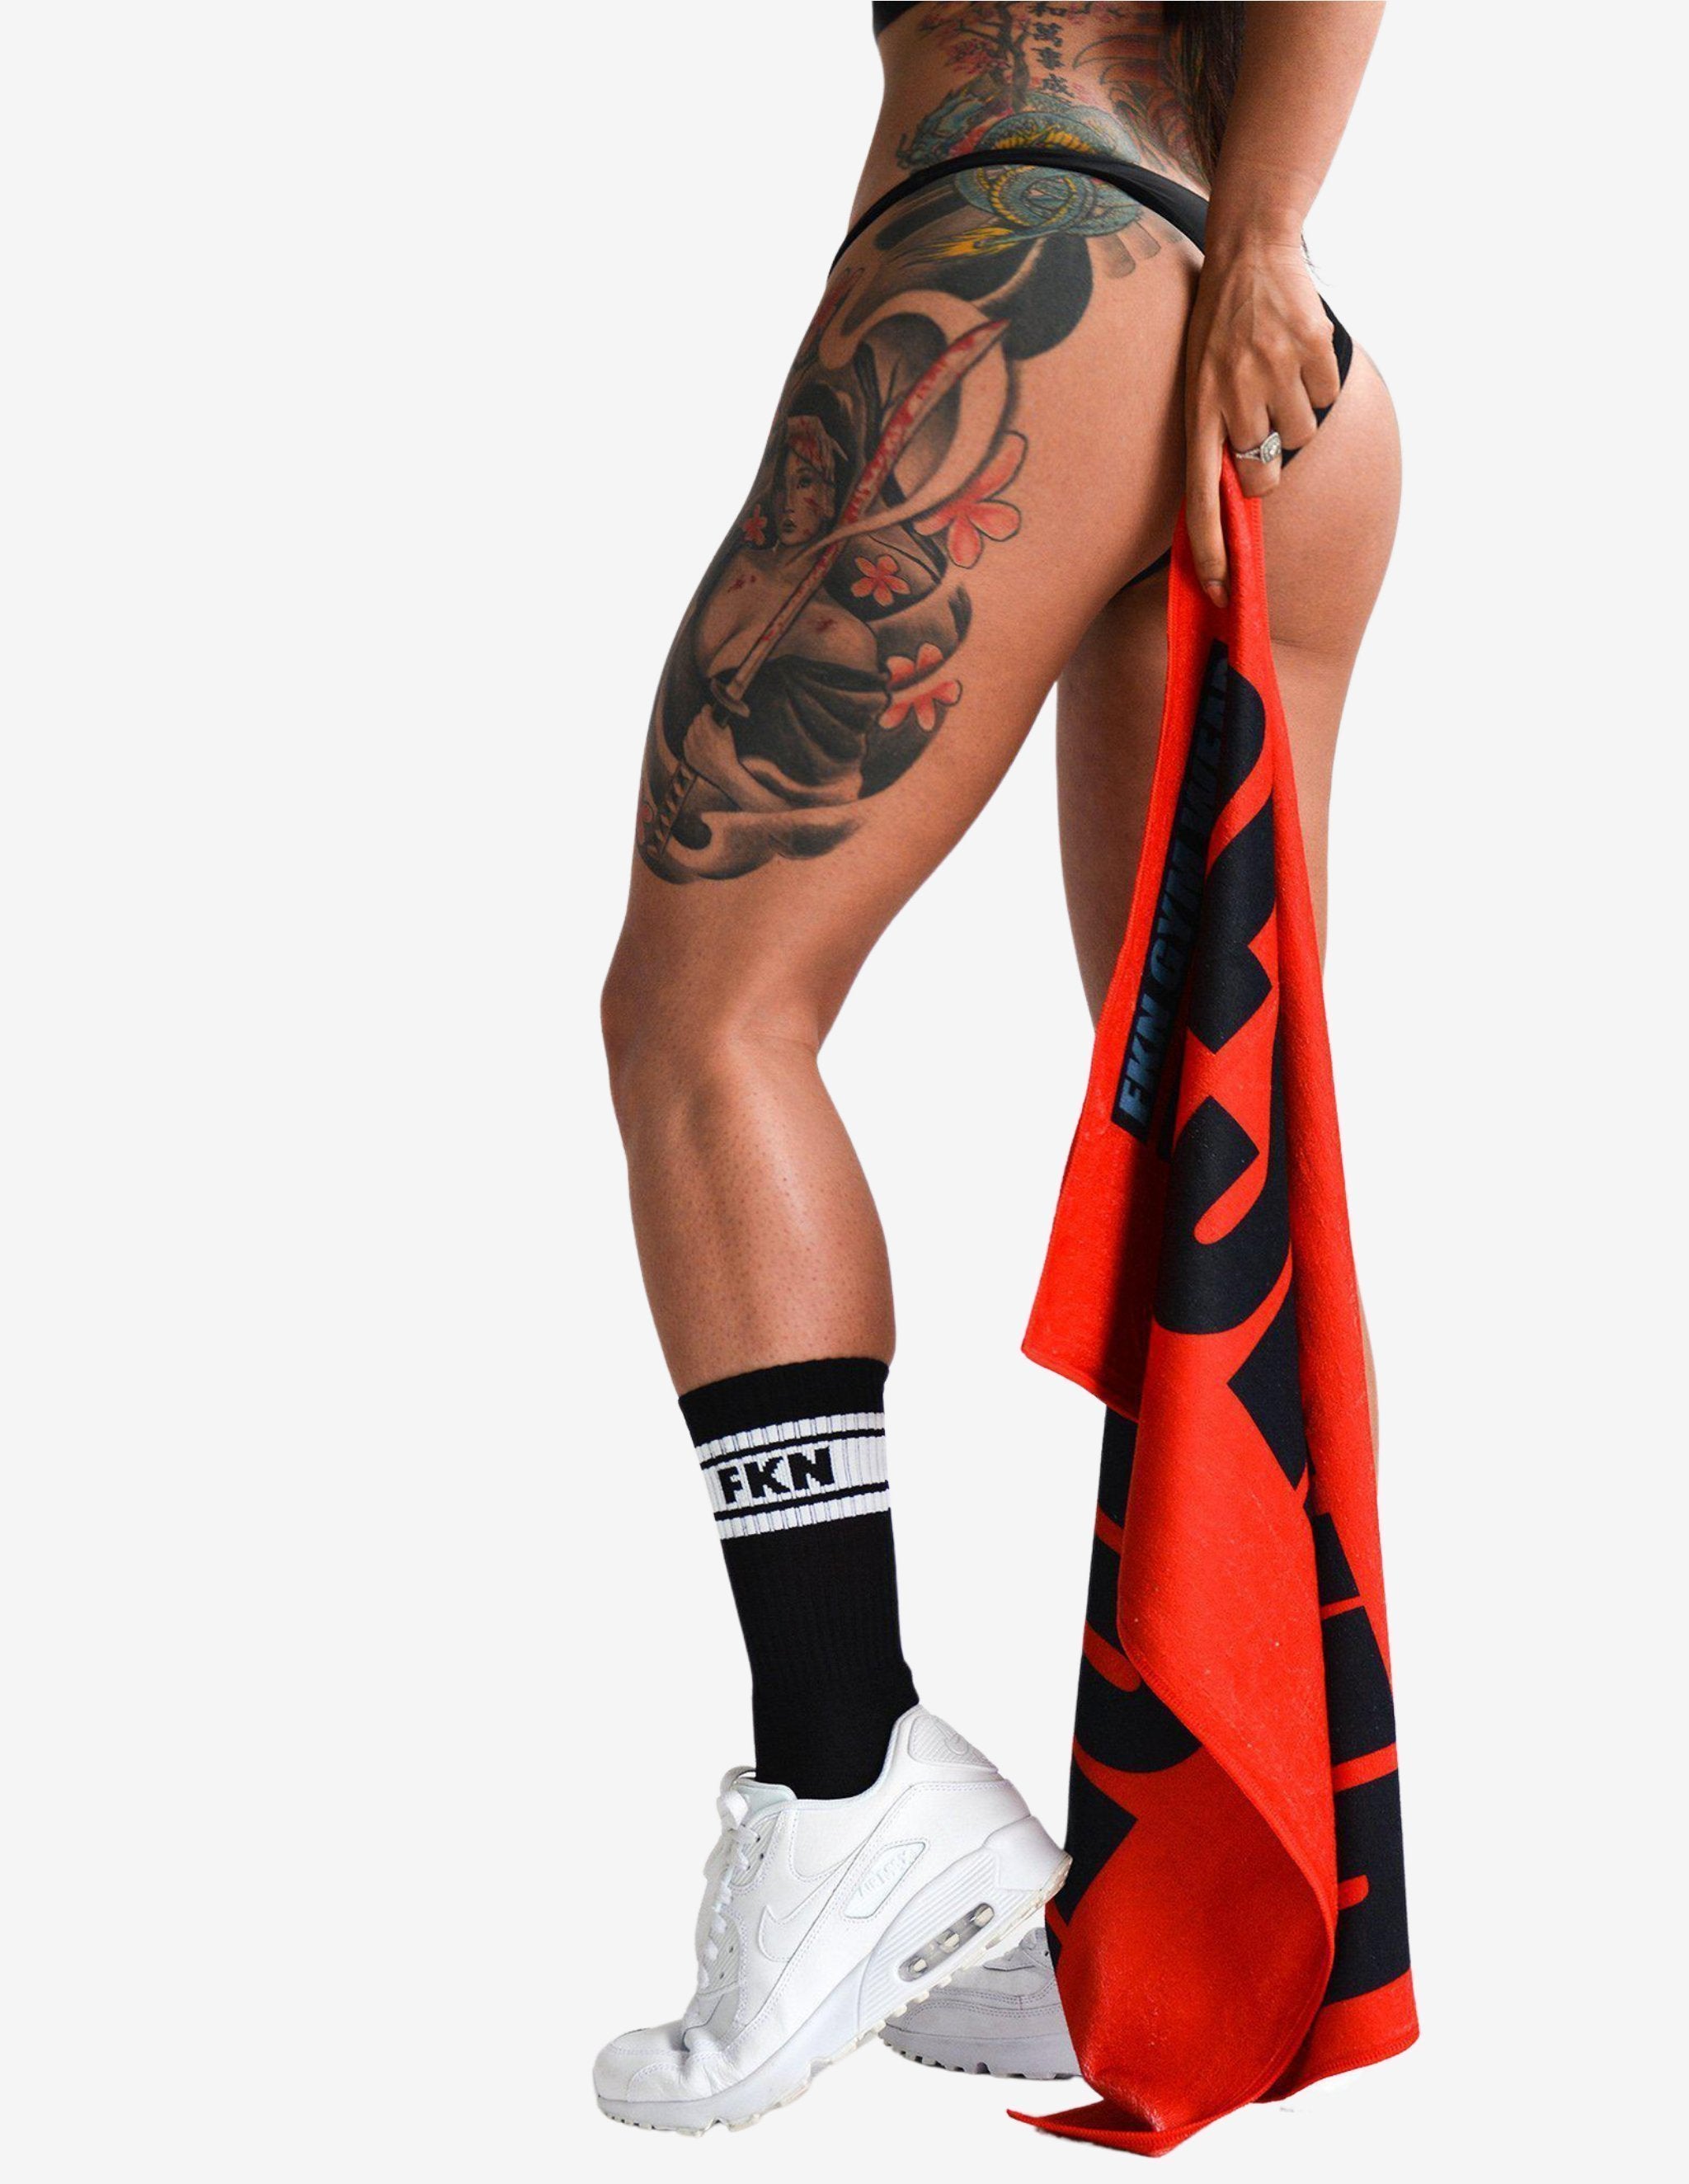 Reserved Towel & Foot Porn Socks Pack-Accessories Sets-FKN Gym Wear-Guru Muscle